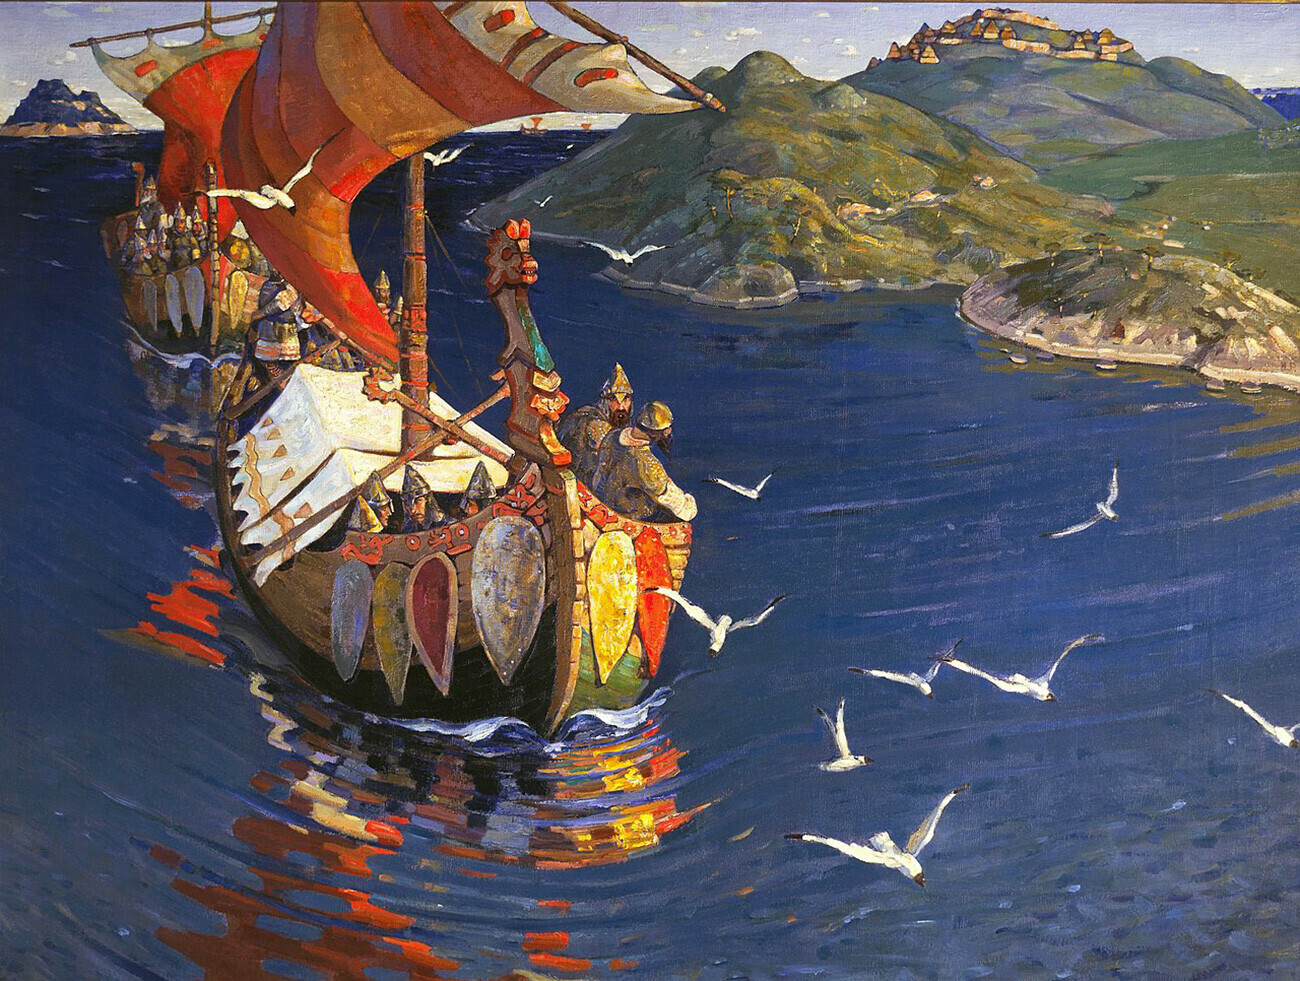 Invitados desde el mar, Nicholas Roerich, 1901

Nicholas Roerich